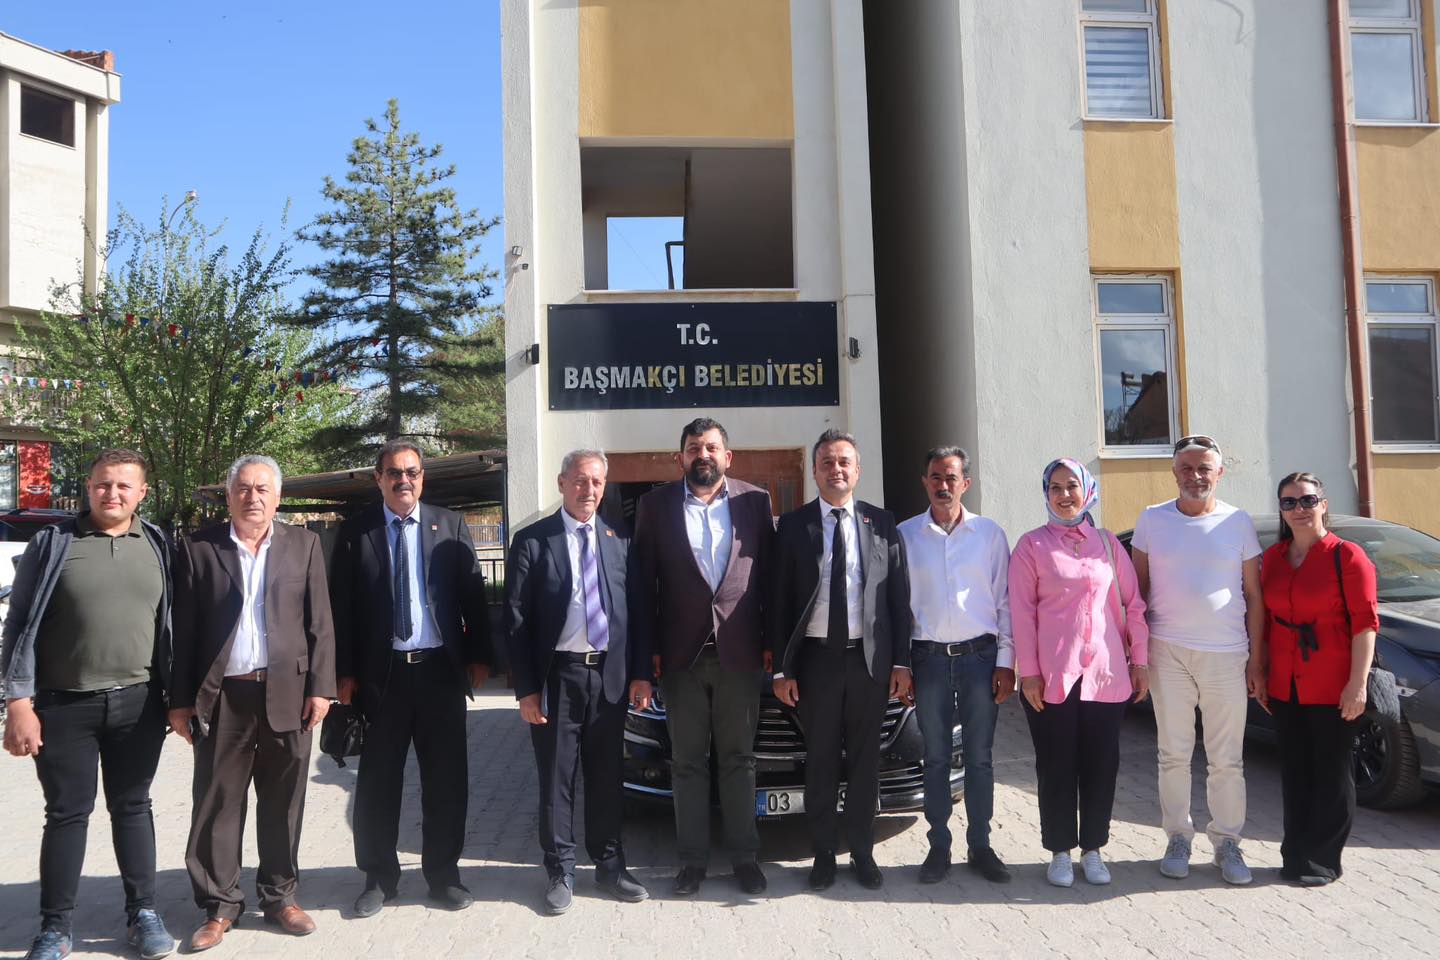 CHP Afyonkarahisar İl Başkanı ve İl Yönetimi, Başmakçı Belediye Başkanı'na destek vermek için ziyaret gerçekleştirdi.